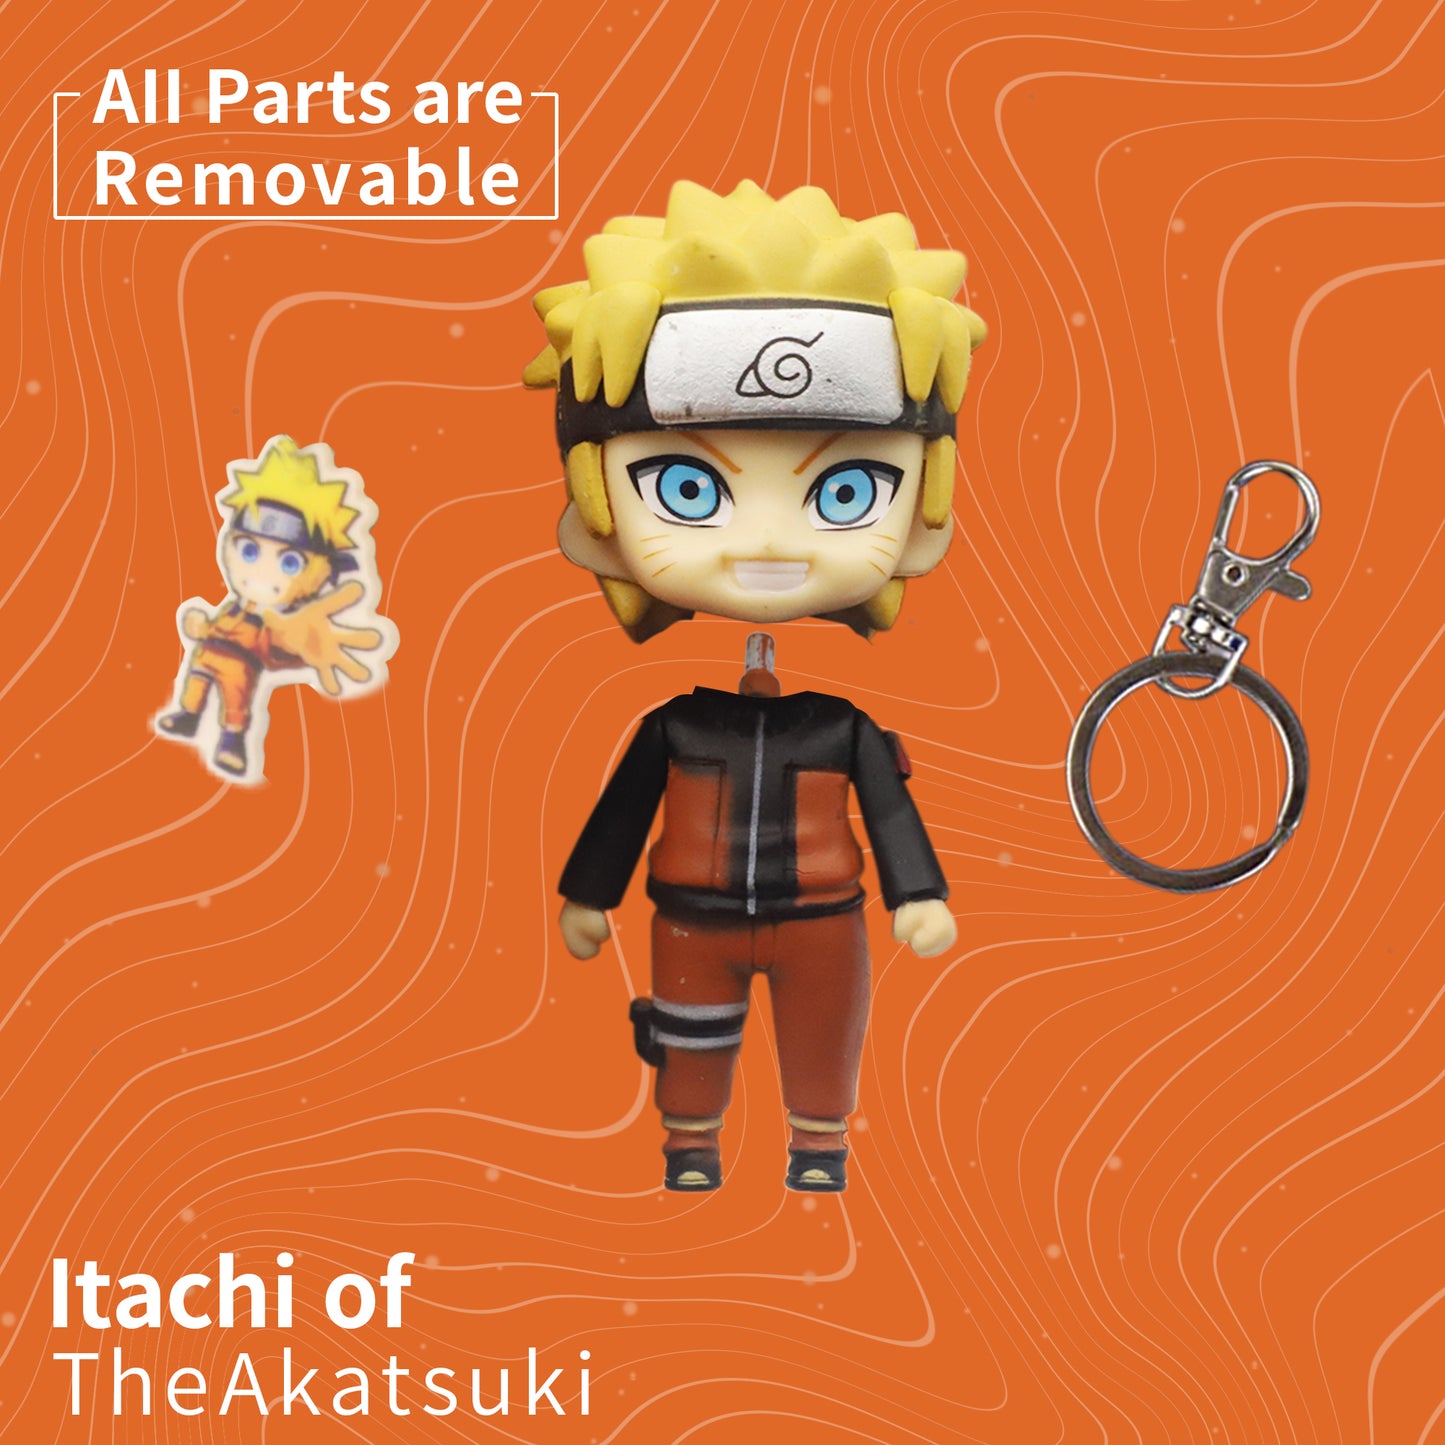 PATPAT Naruto Keychain, Anime Keychain, Cute Keychains, Anime Accessories, Naruto Uzumaki Figures Keychain Collection (Naruto Uzumaki)